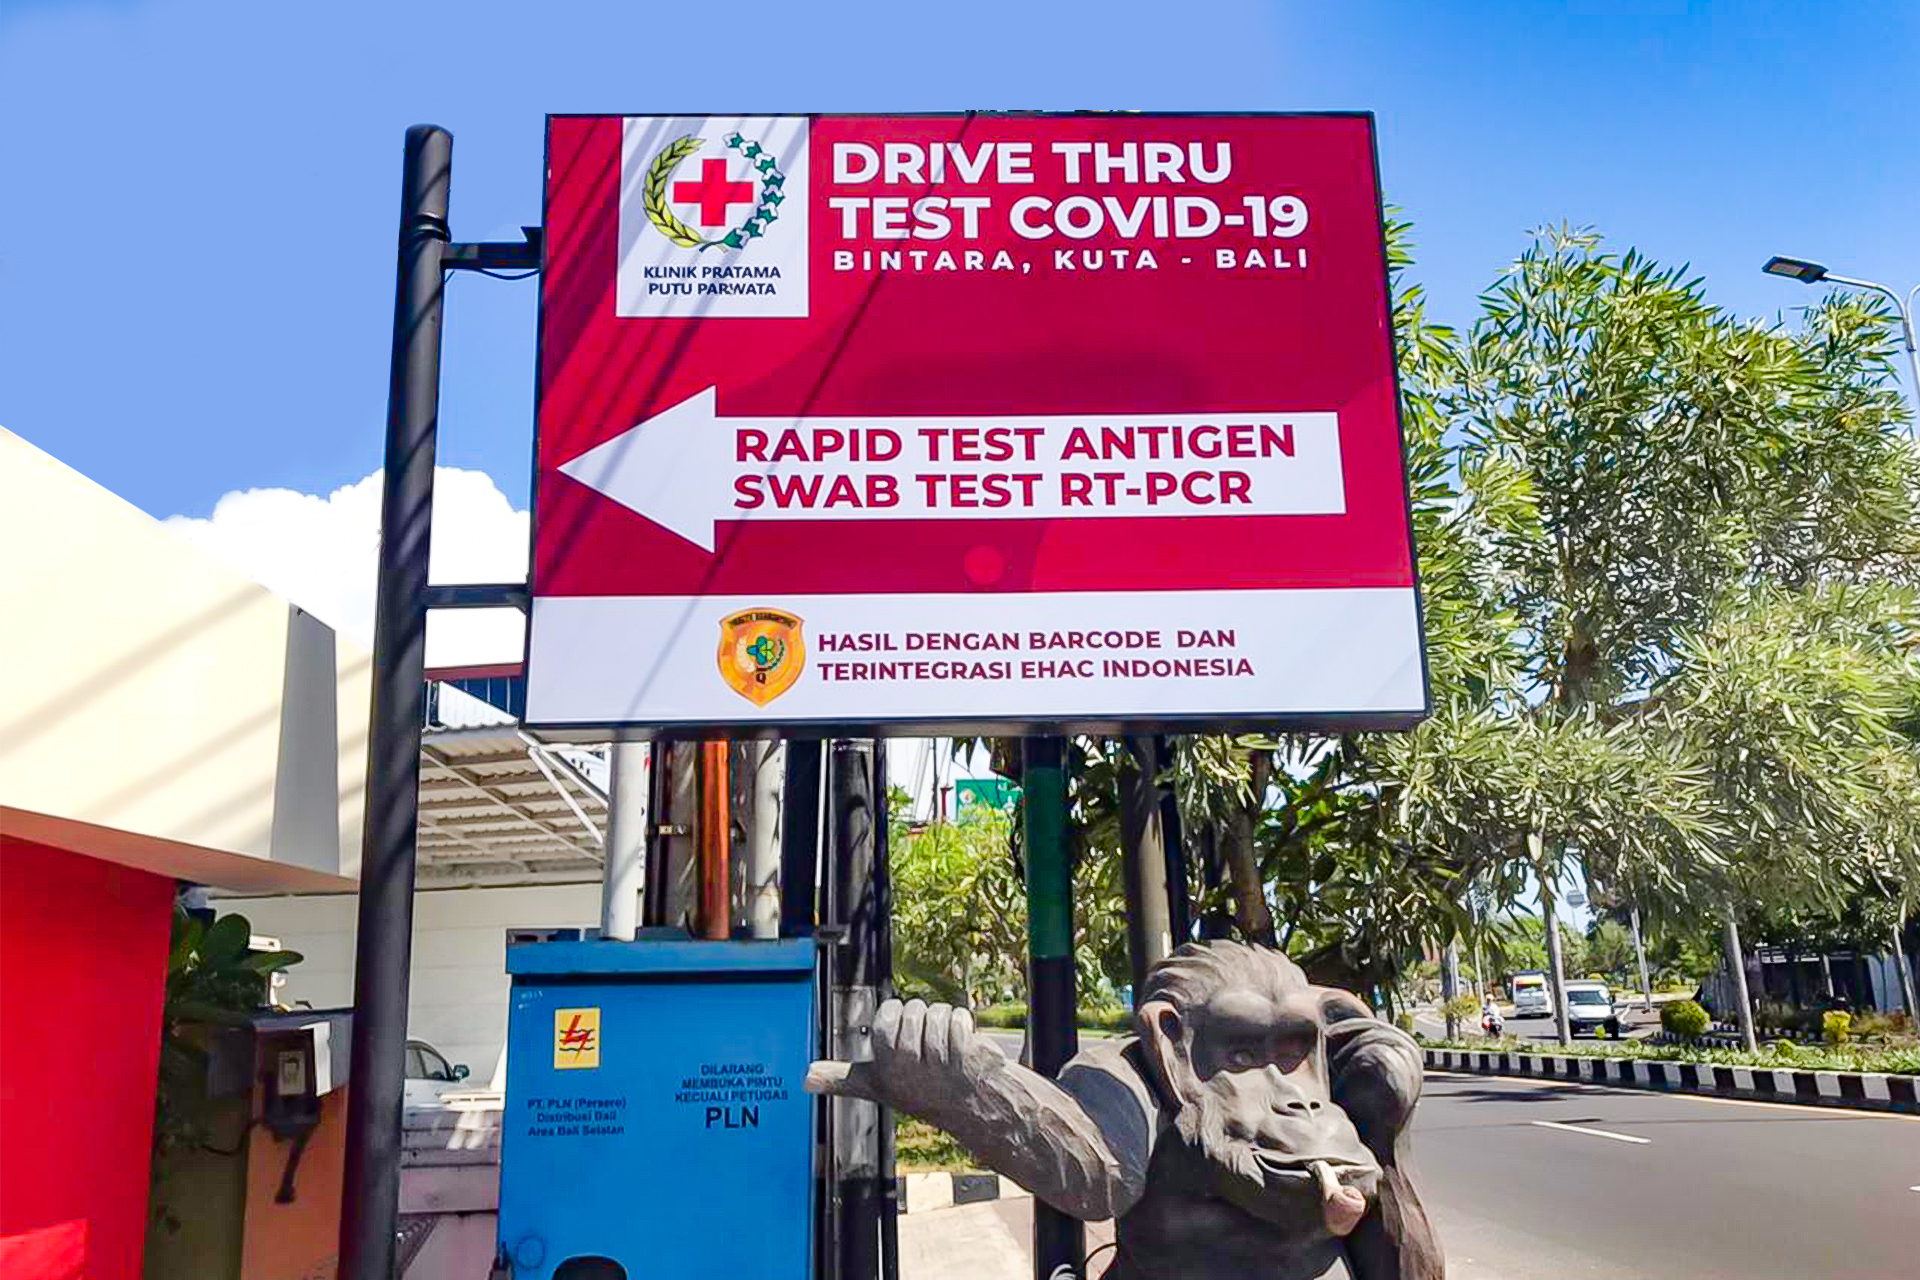 COVID-19 Rapid : Swab Antigen Test Drive-Thru Bintara by Klinik Putu Parwata 2.jpg